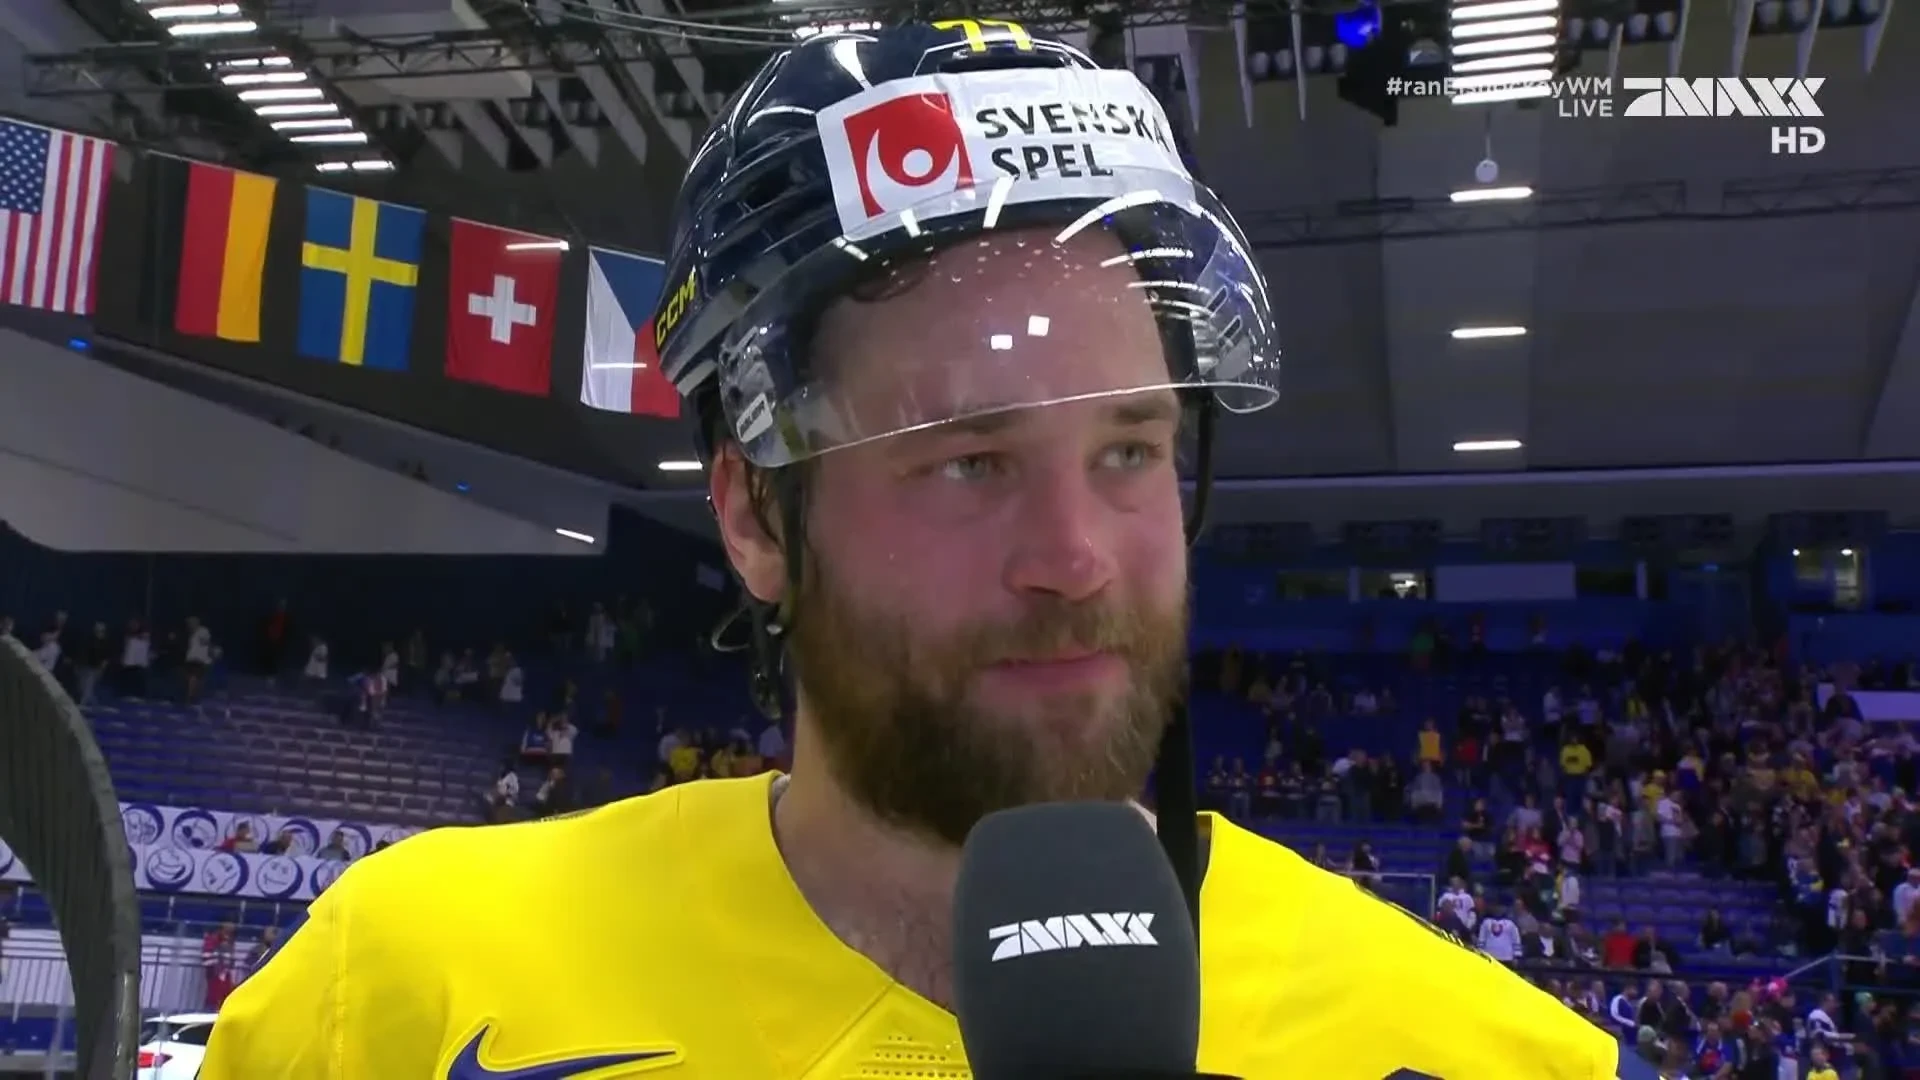 Campeonato del Mundo de Hockey sobre Hielo: "Duro combate" - Hedman celebra la victoria contra EEUU